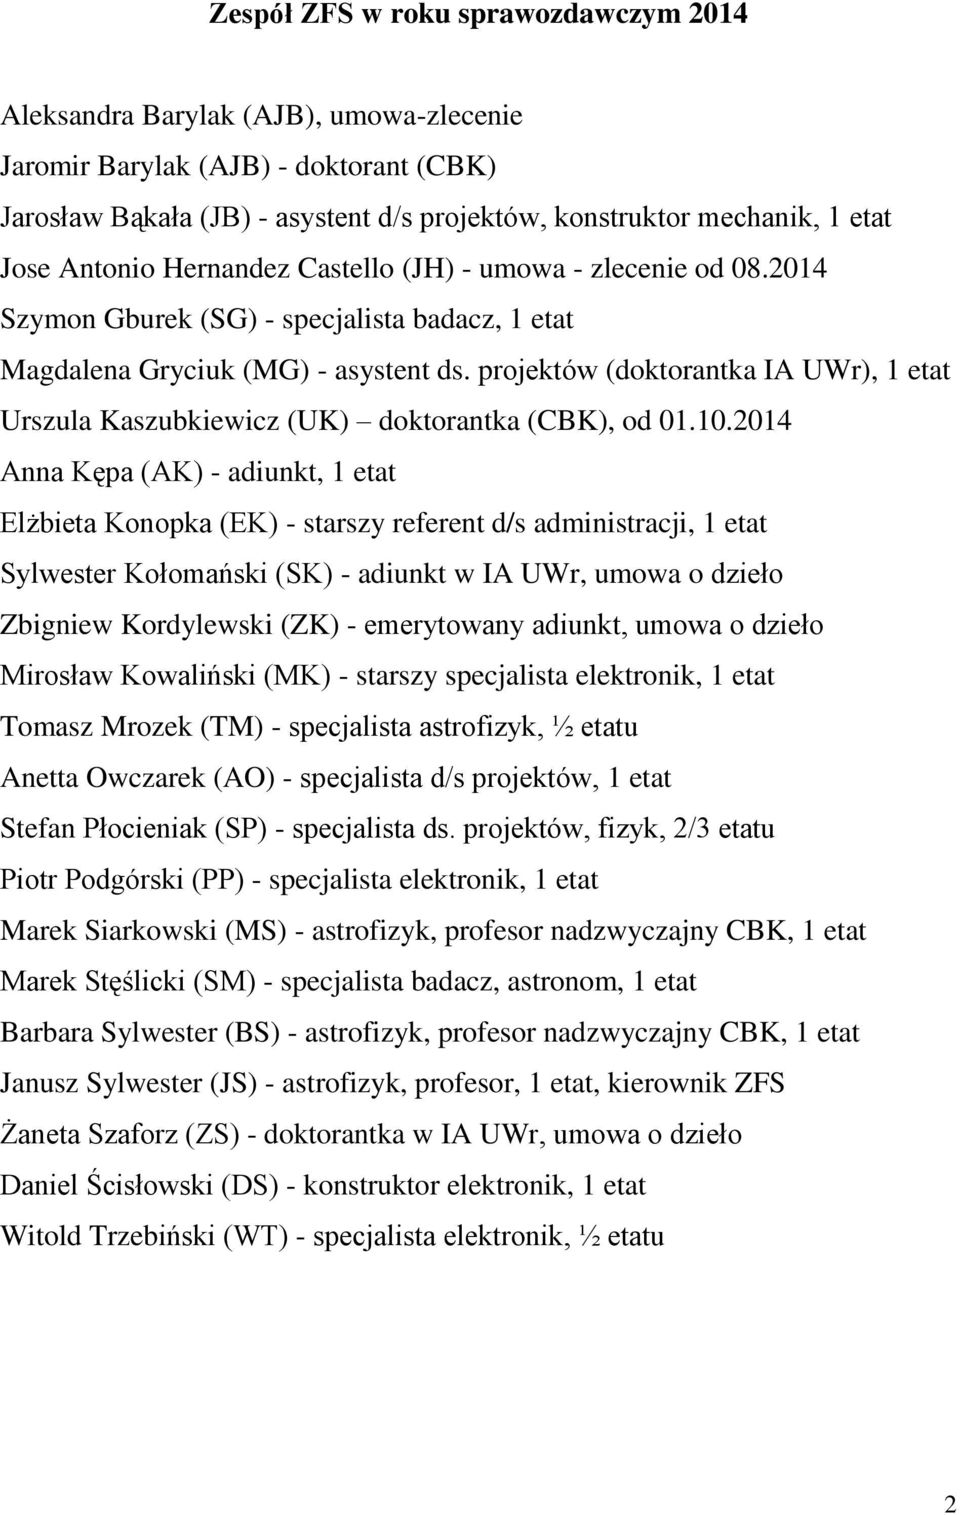 projektów (doktorantka IA UWr), 1 etat Urszula Kaszubkiewicz (UK) doktorantka (CBK), od 01.10.